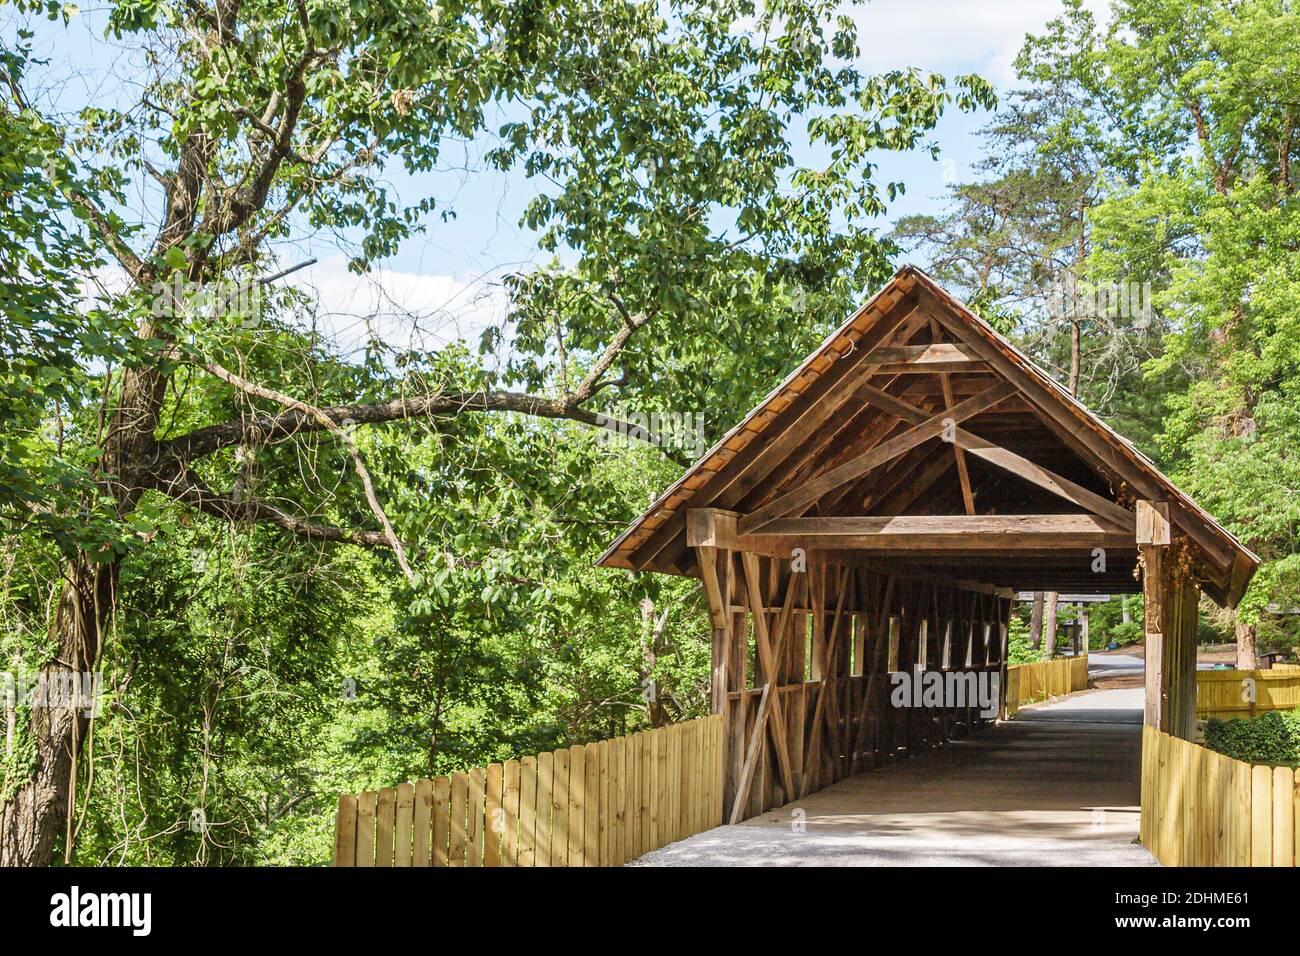 Alabama Gadsden Noccalula Falls Park & Campground, Gilliland's Reese Covered Bridge costruzione a tratto singolo, Foto Stock